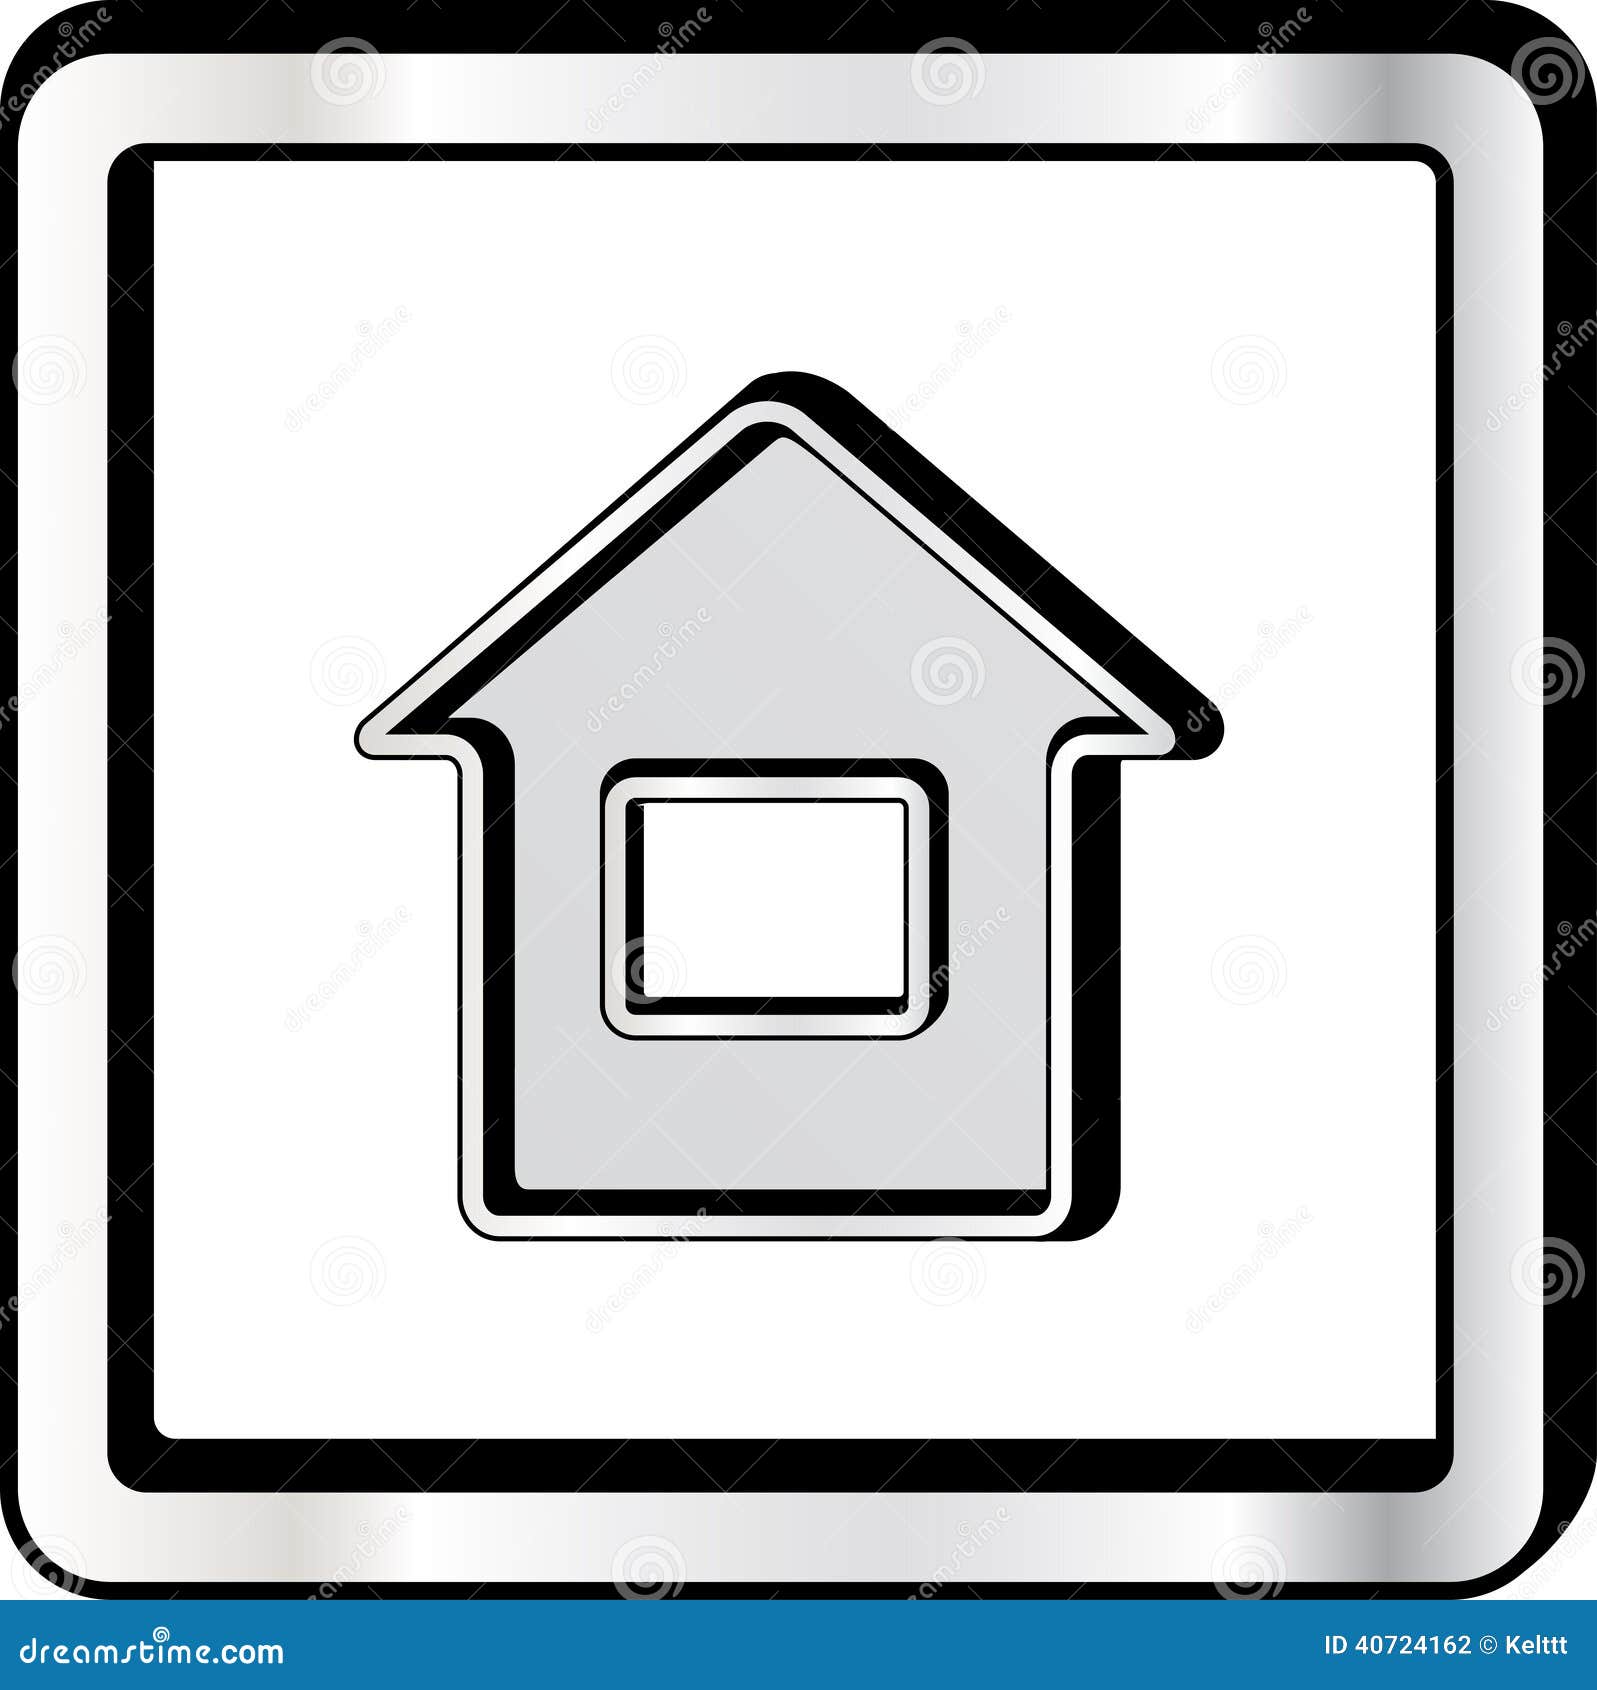 convex house icon